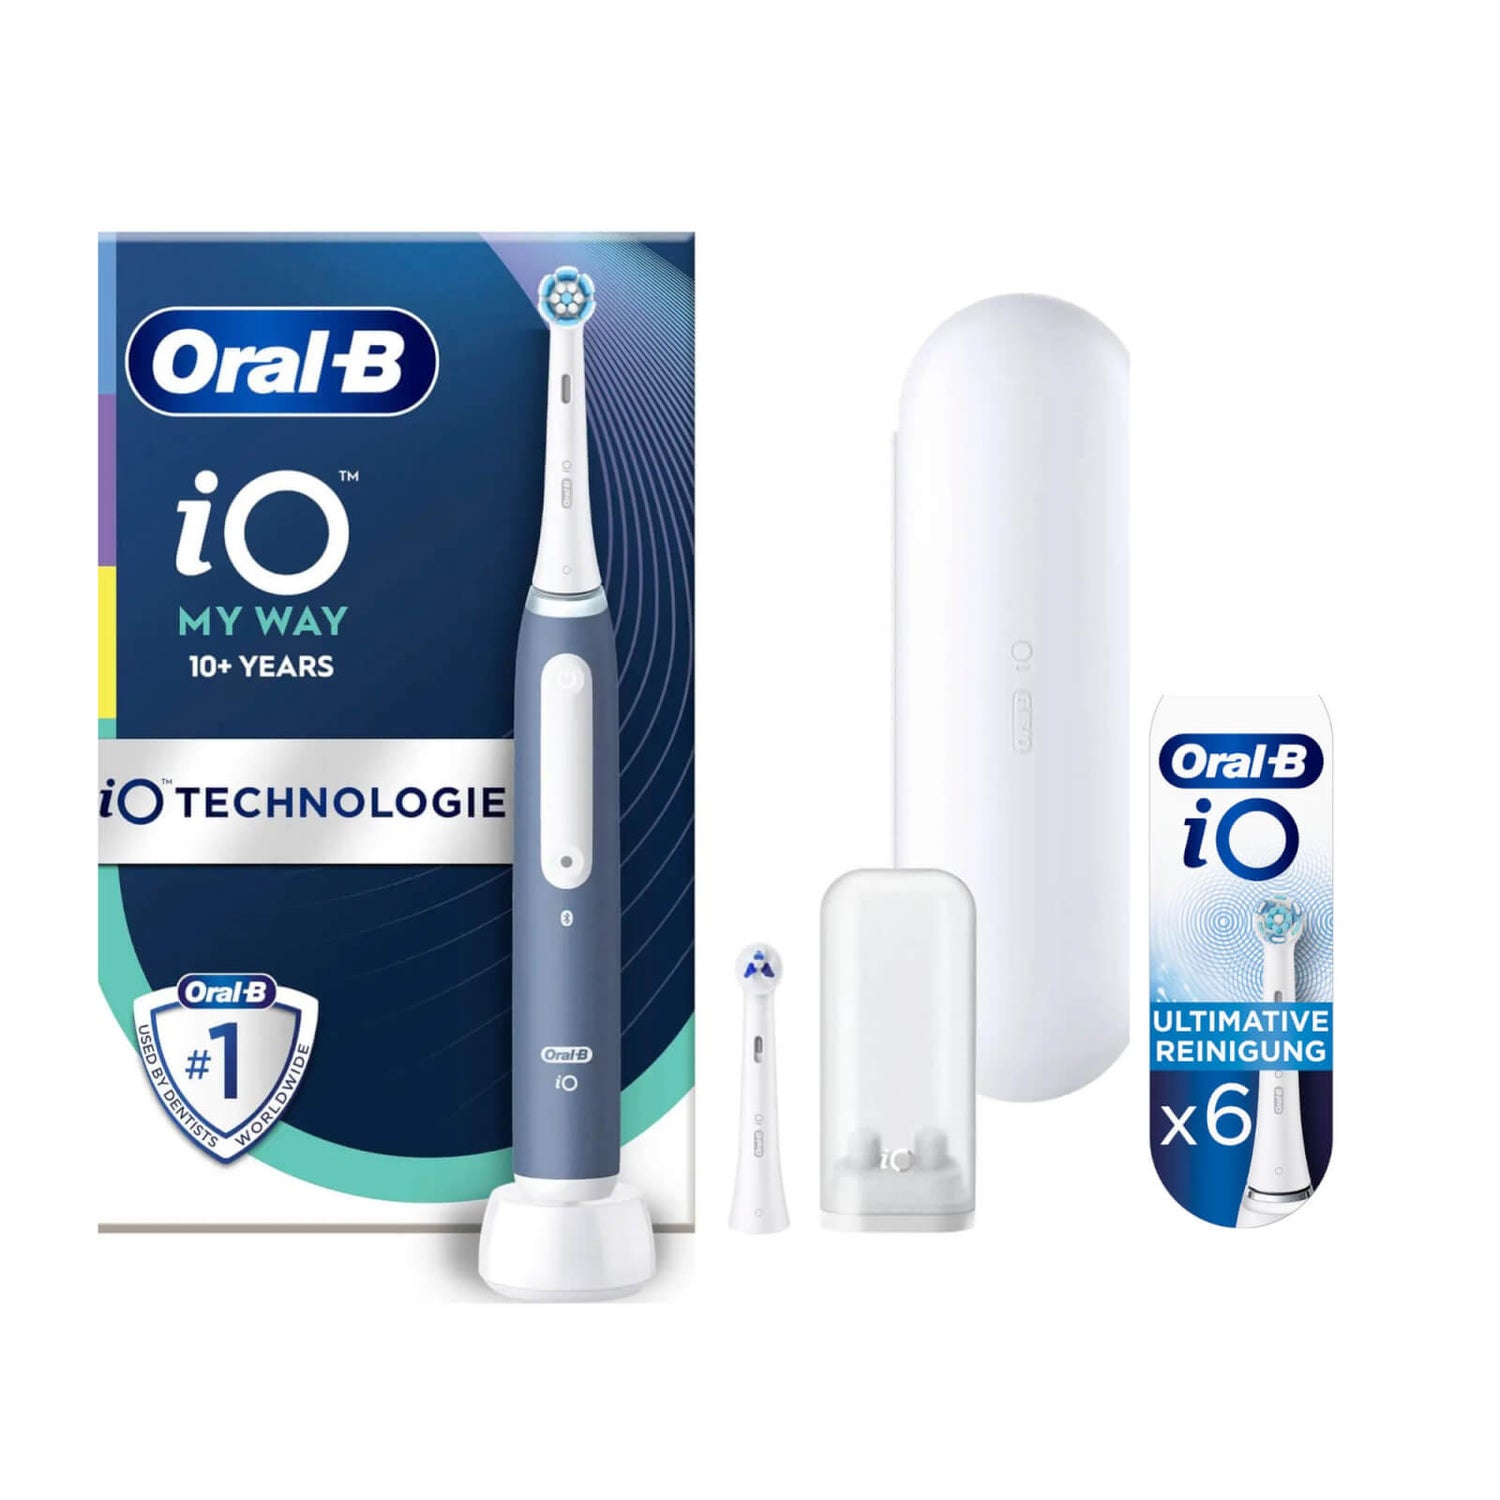 Oral-B iO My Way Elektrische Zahnbürste ab 10 Jahren, 4 Putzmodi, extra Aufsteckbürste für Zahnspange, 1 Reiseetui, ocean blue